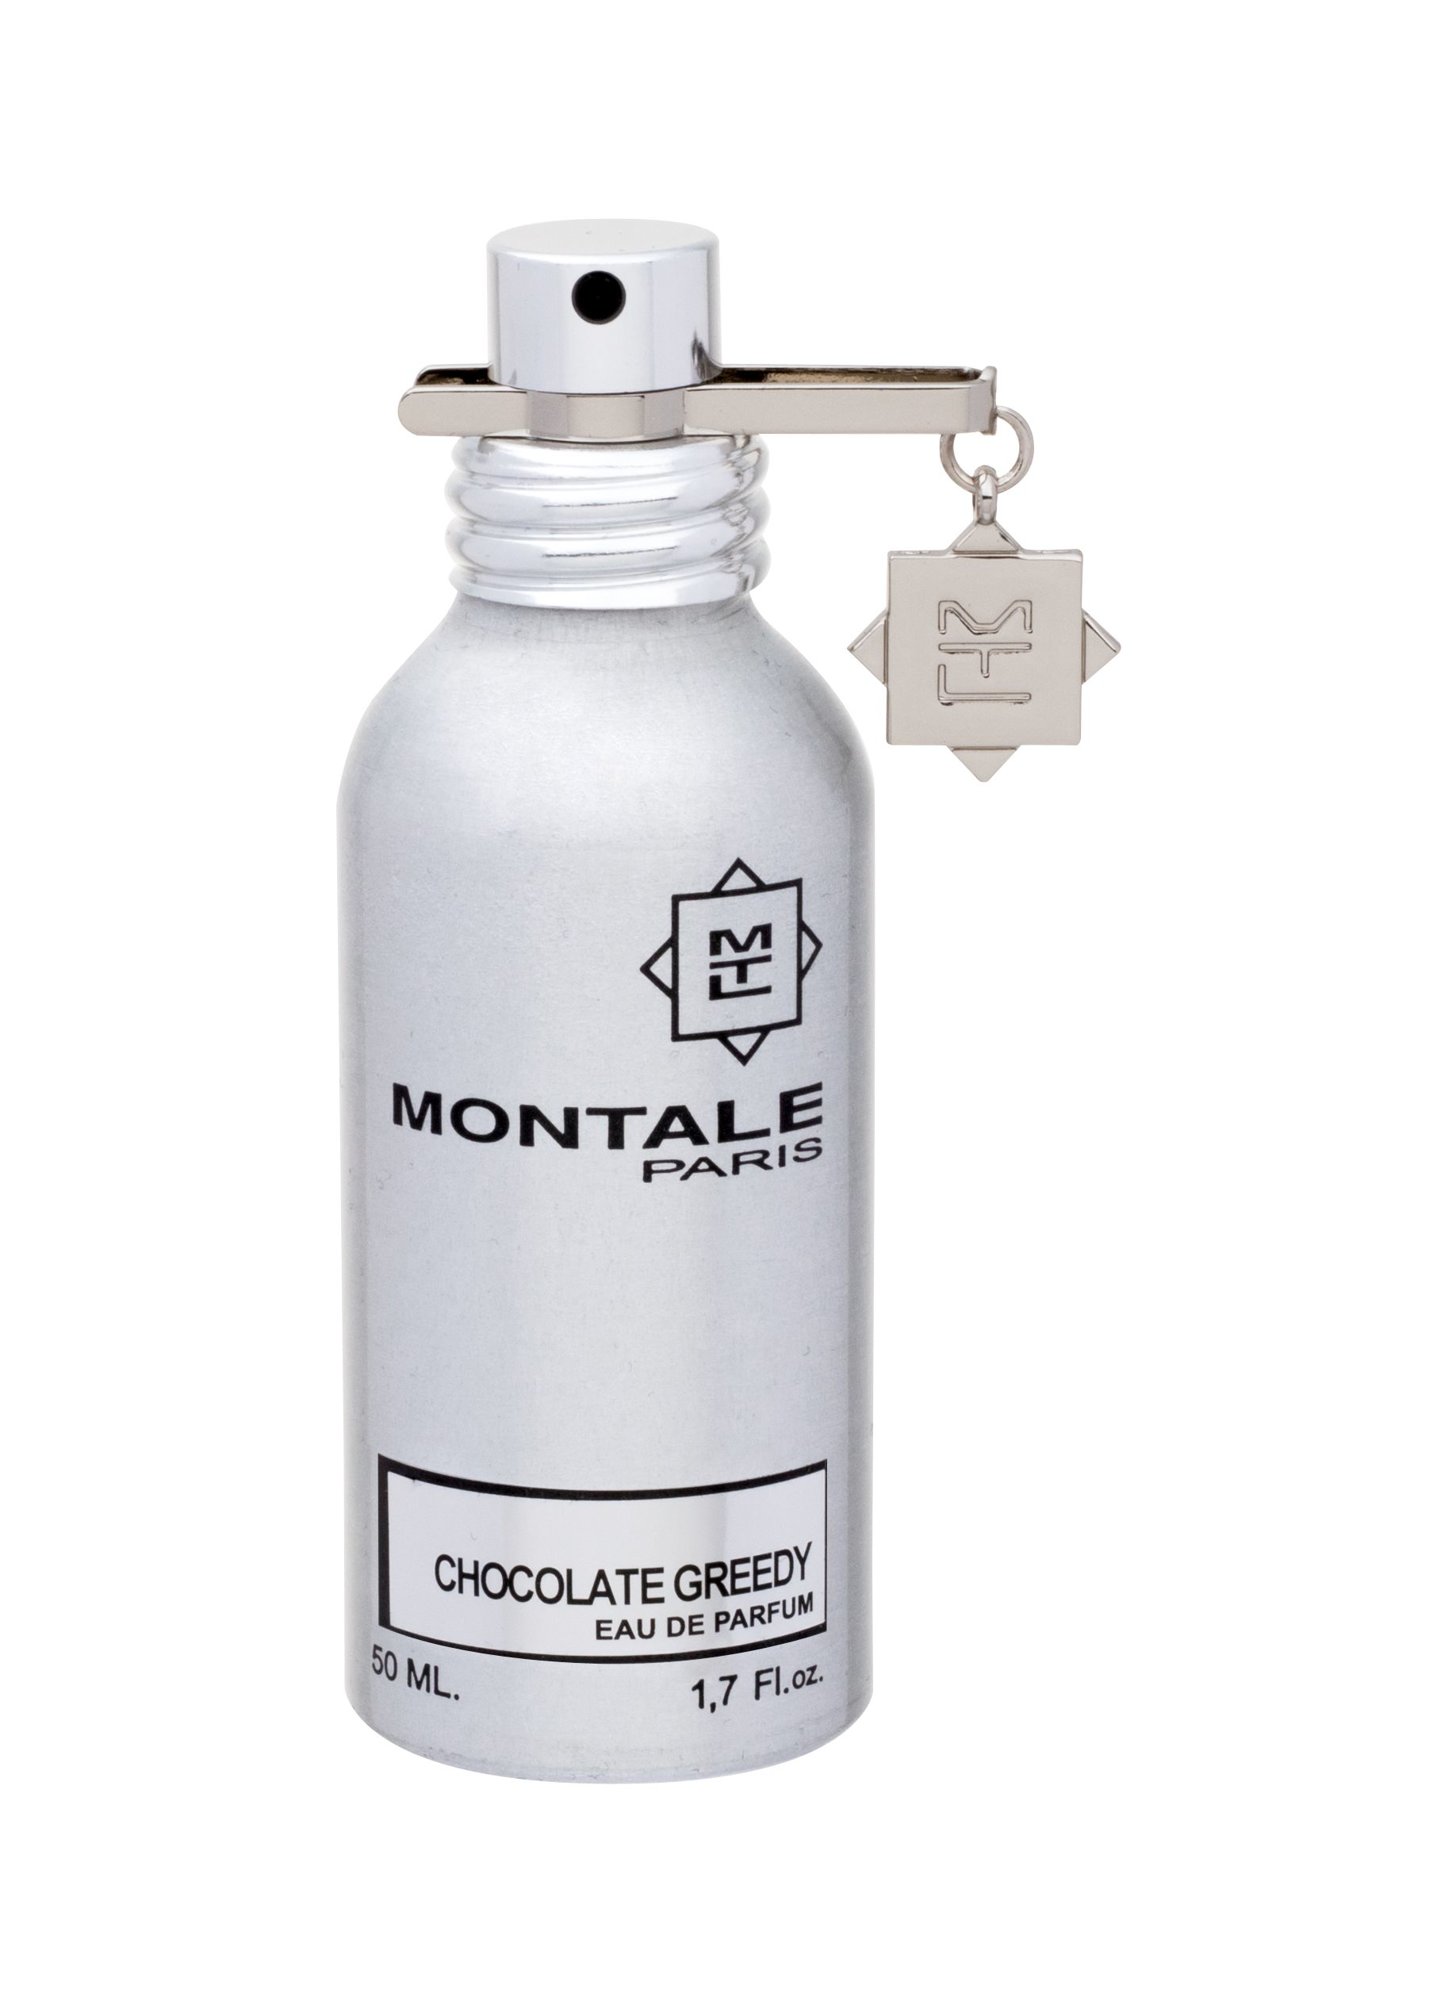 Montale Paris Chocolate Greedy 50ml NIŠINIAI Kvepalai Unisex EDP